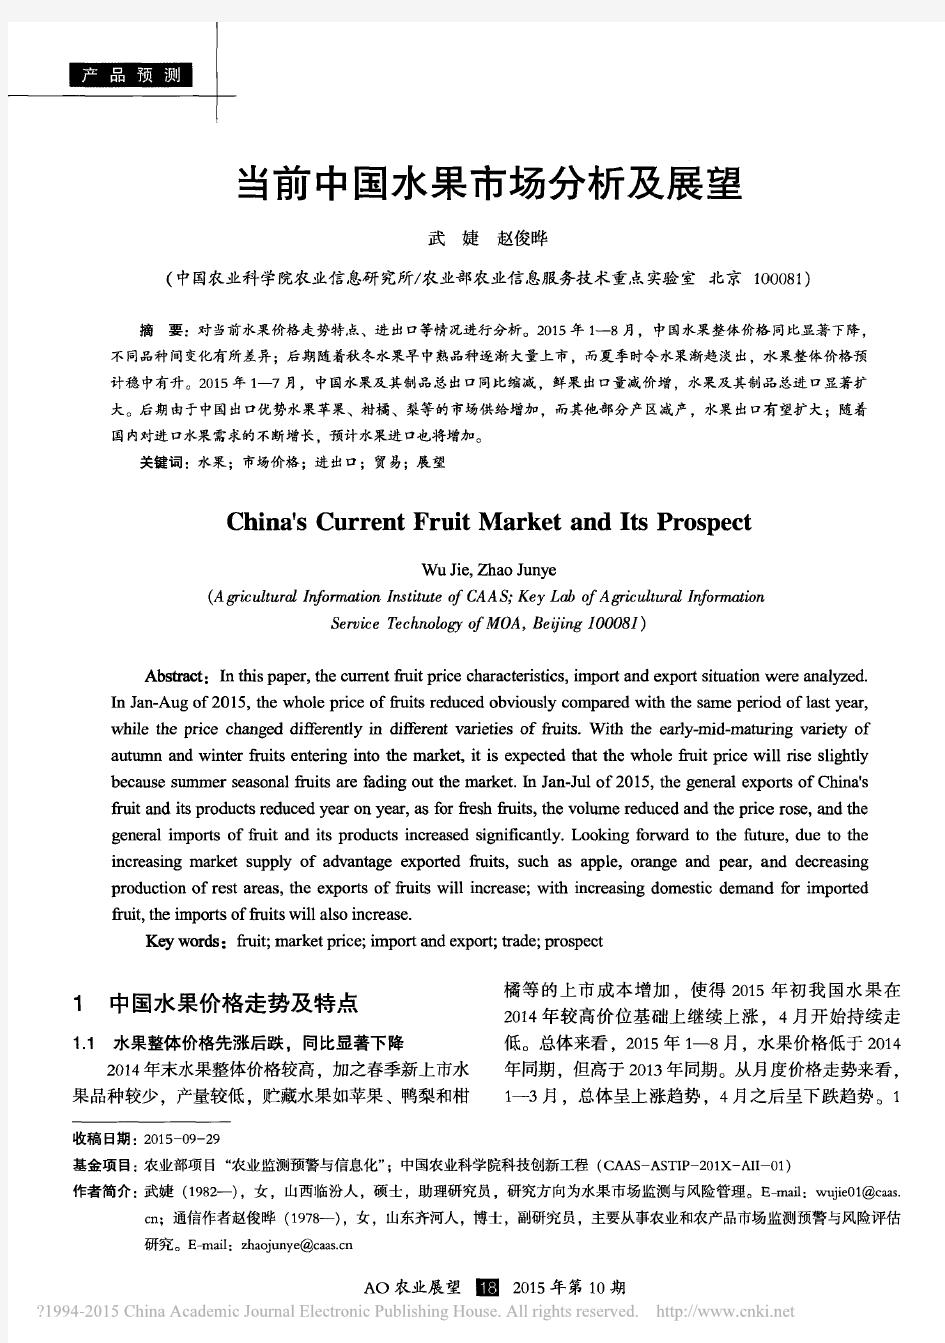 当前中国水果市场分析及展望